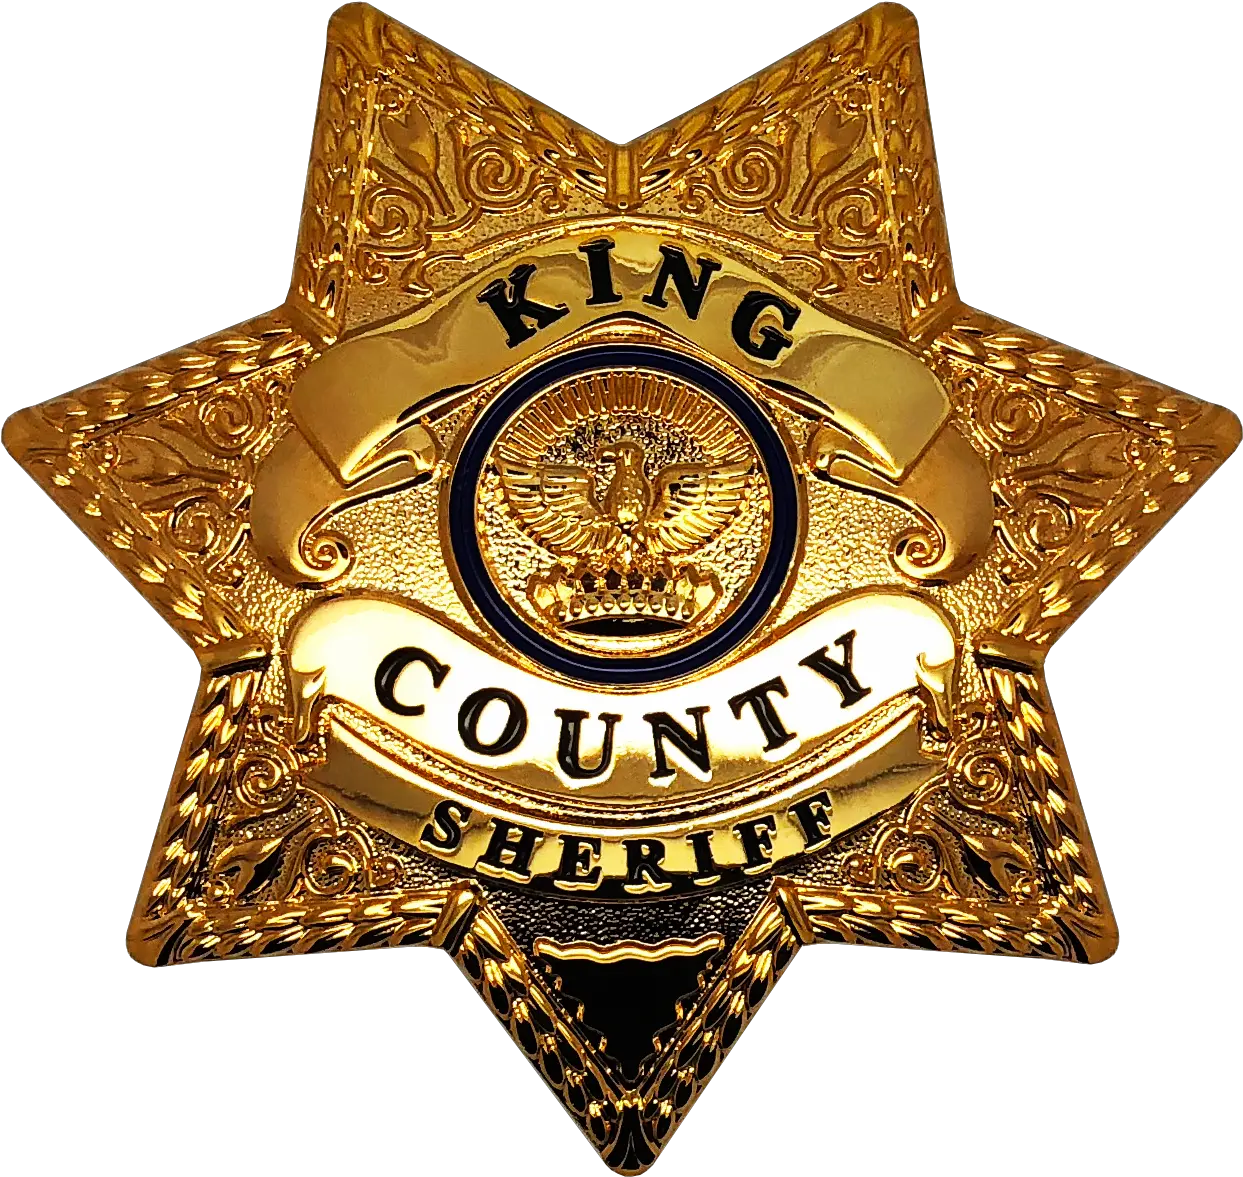 King County Sheriff Star Badge Walking Dead Clip Art Png Walking Dead Logo Png